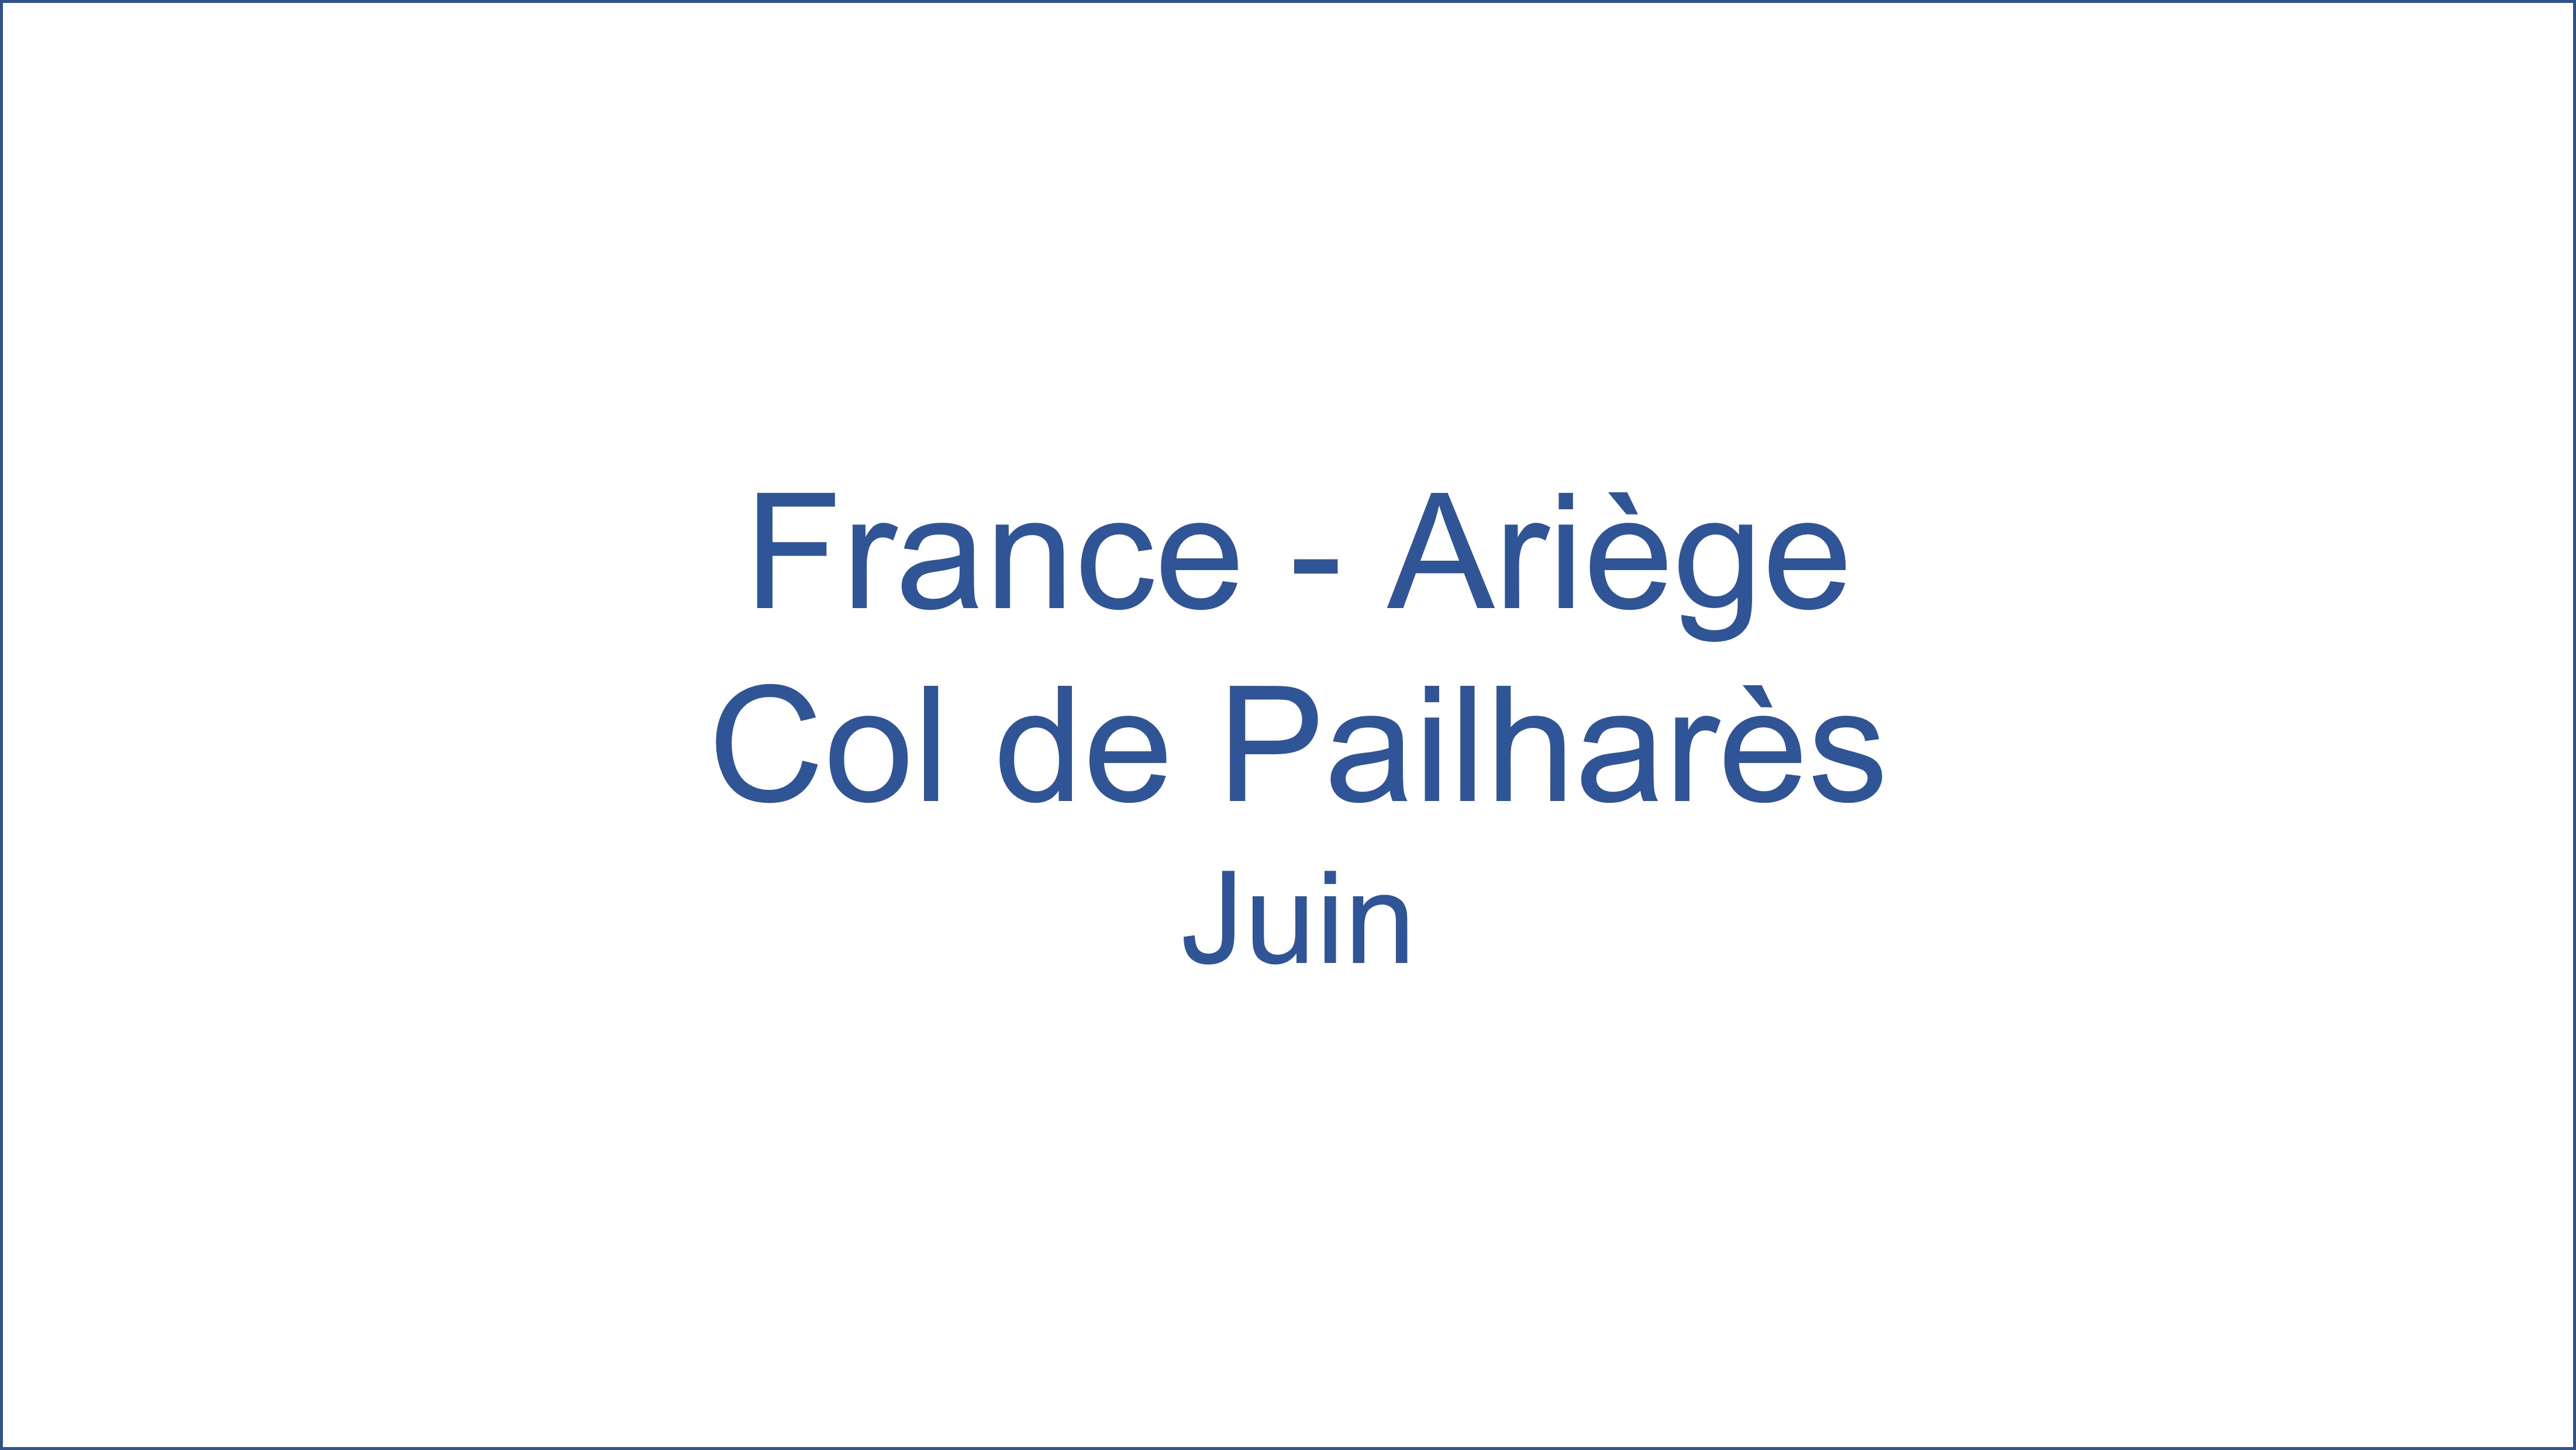 France - Arige Col de Pailhars 06/2021